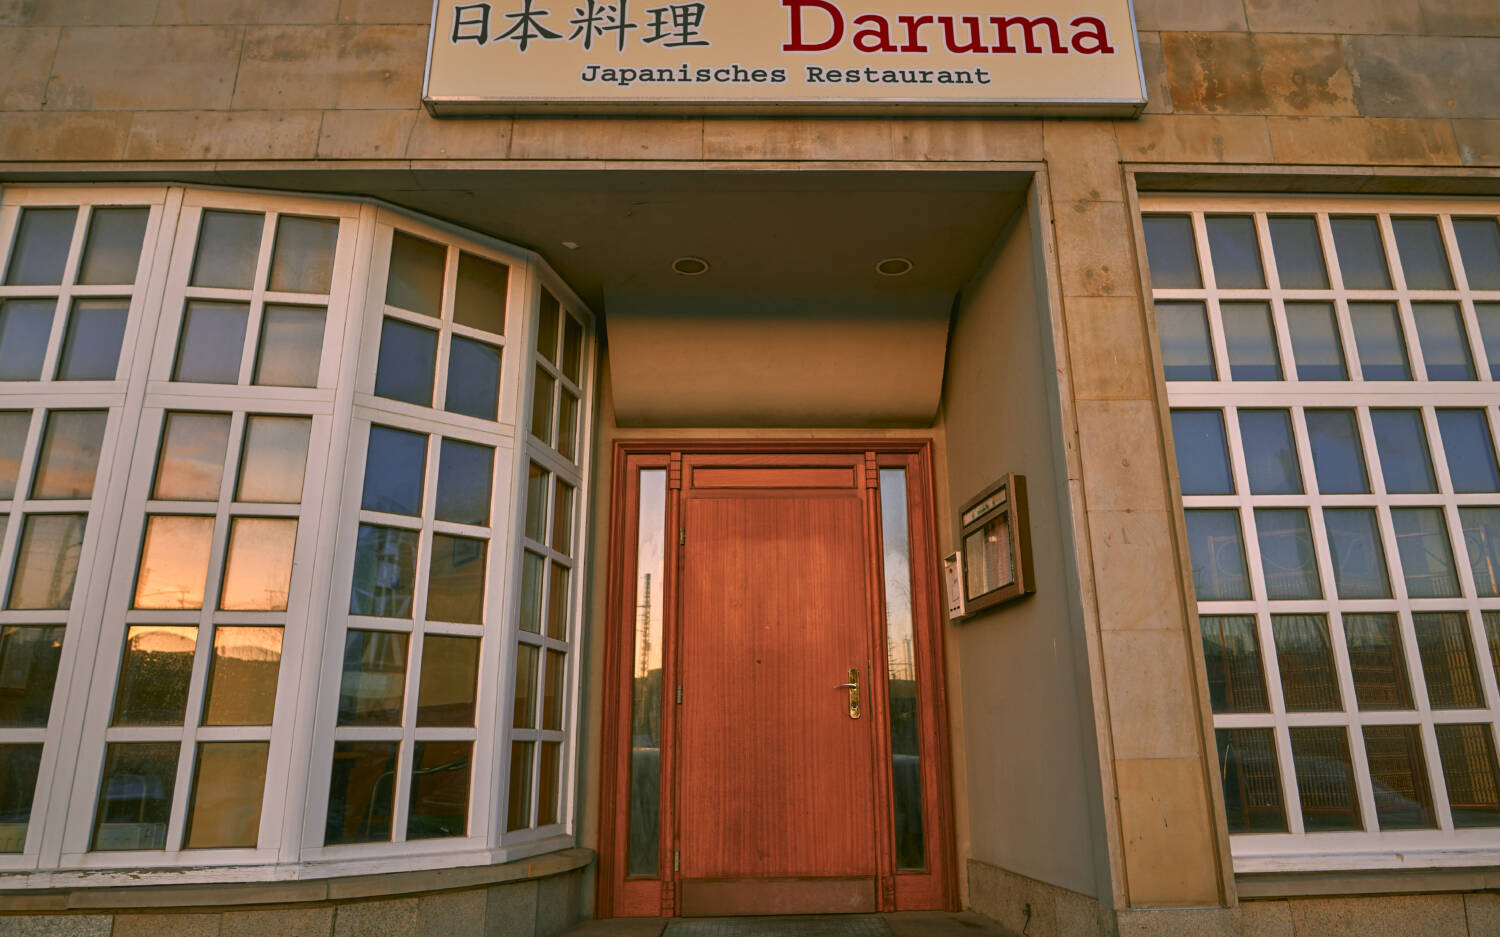 Eine Reise nach Asien: das Daruma in Hammerbrook / ©Marc Sill